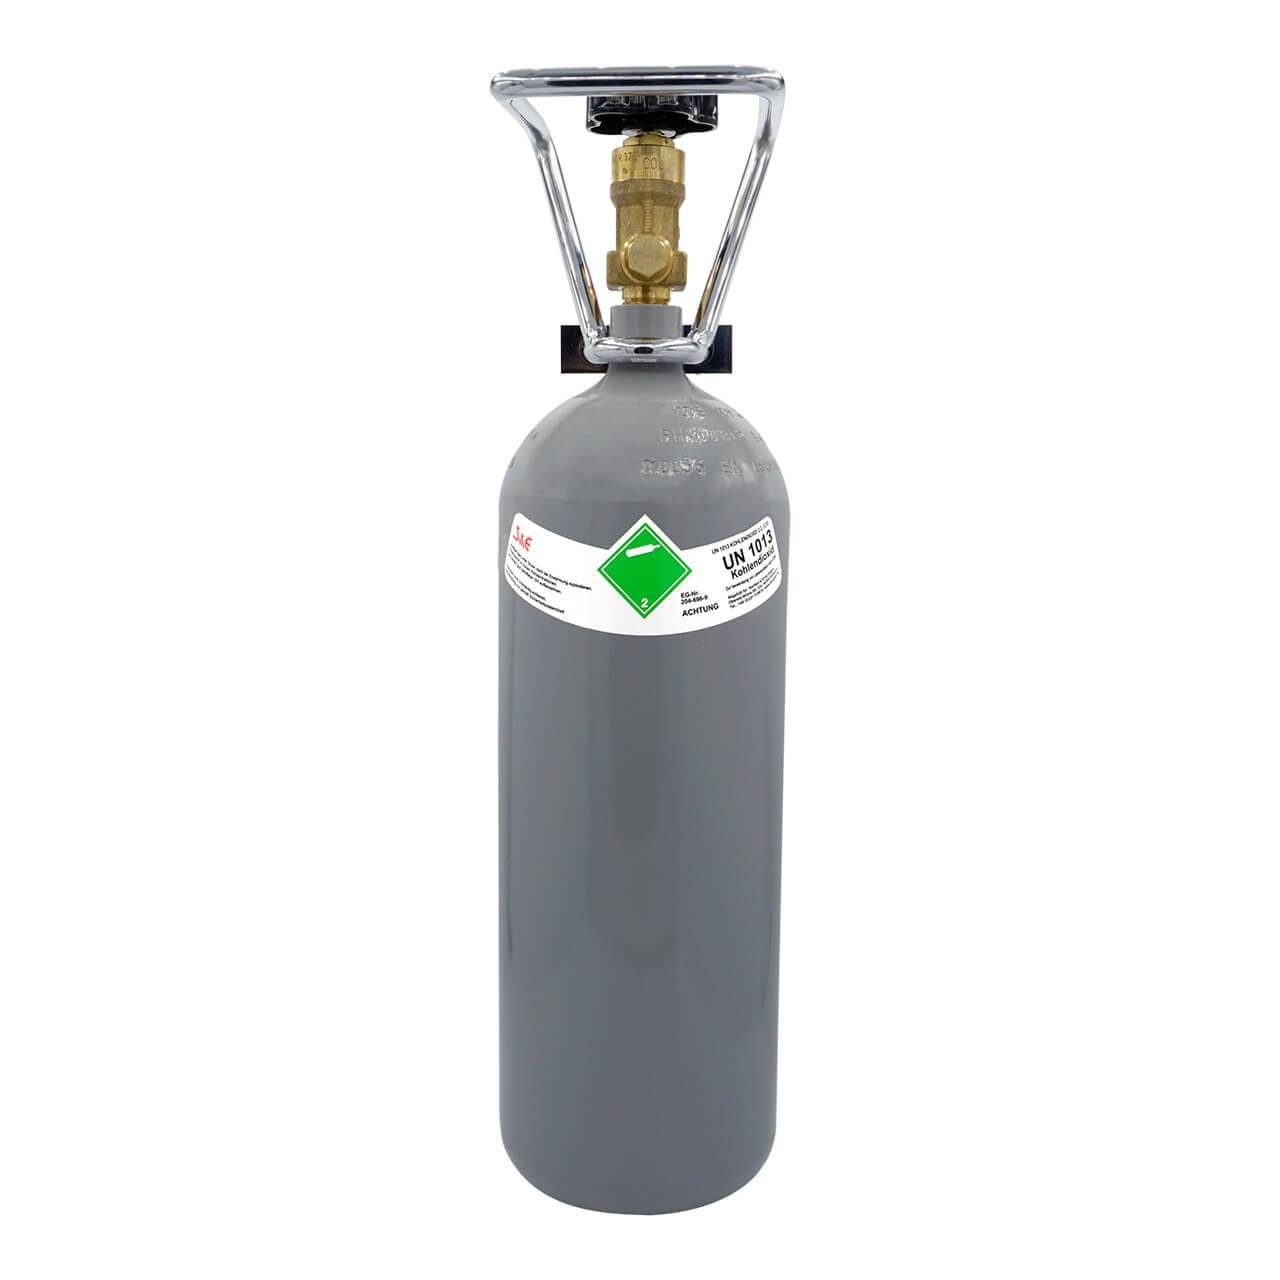 CAGO Wassersprudler Flasche, 2 kg CO2 Gasflasche Kohlensäure Aquaristik Bar  Zapf-Anlage Flasche (34,98 € / 1 Kilogramm)